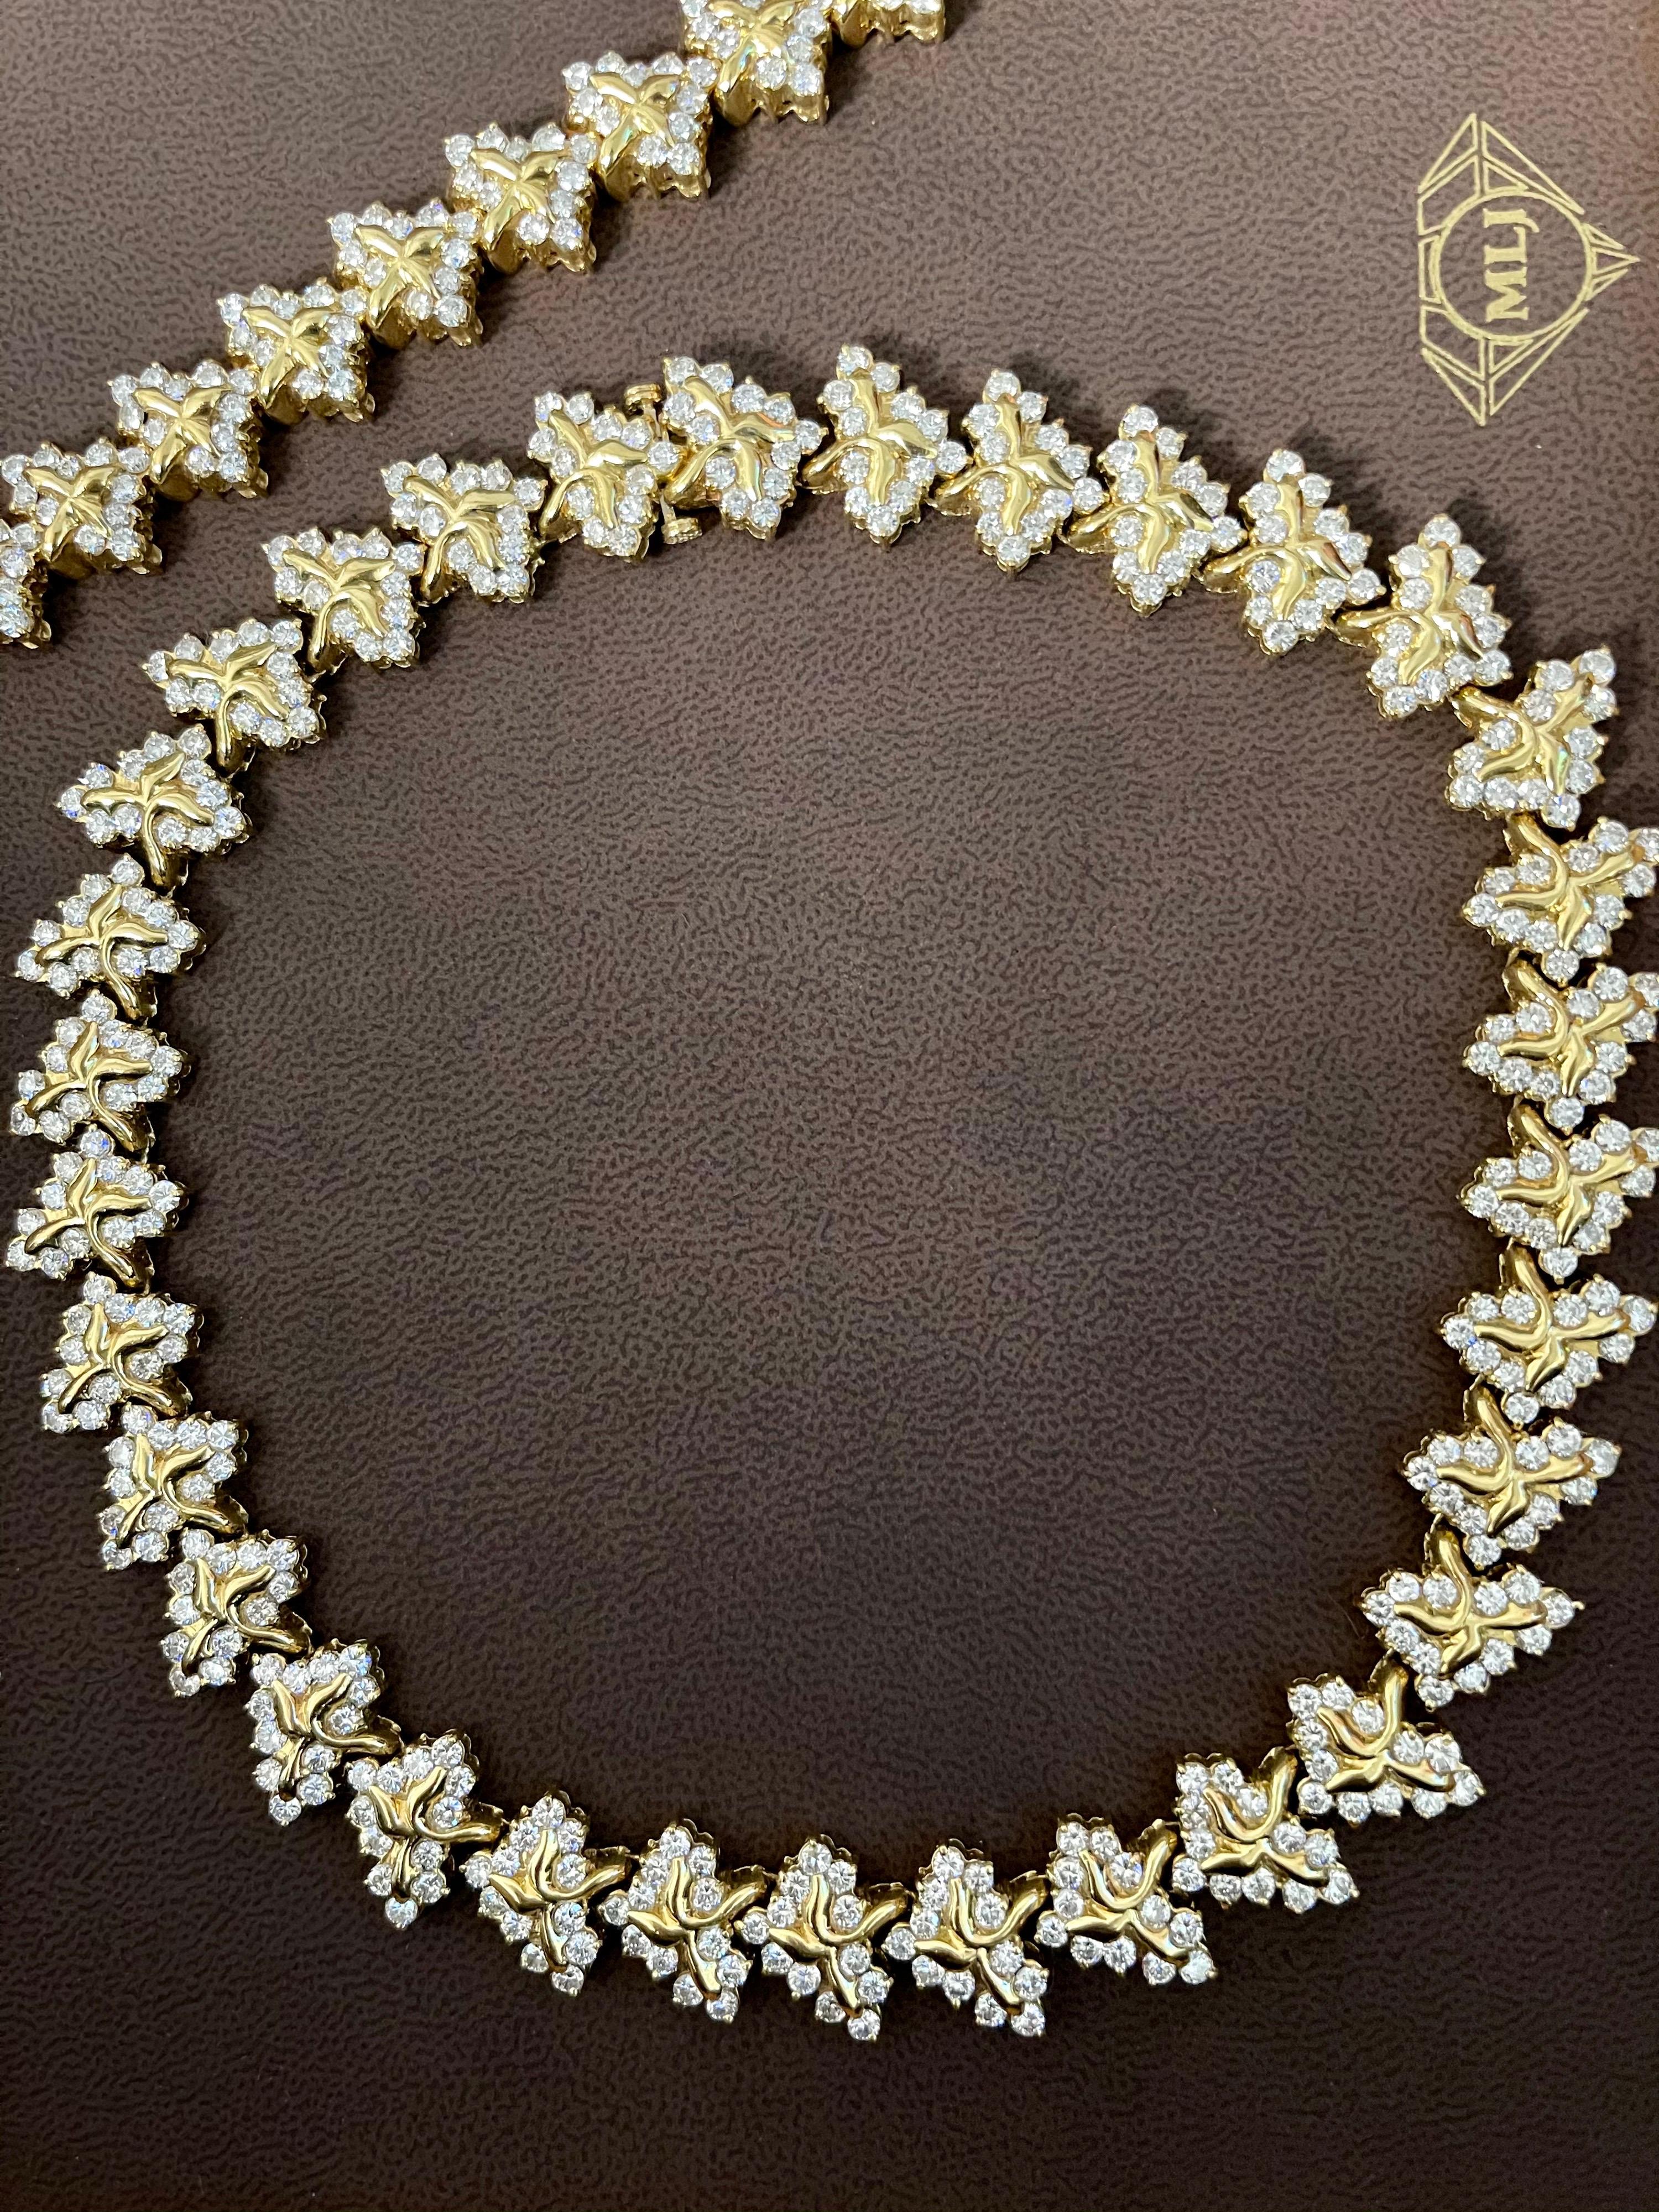 38 Carat Diamond Necklace and Bracelet 180 Grams 14 Karat Gold Bridal Suite For Sale 9